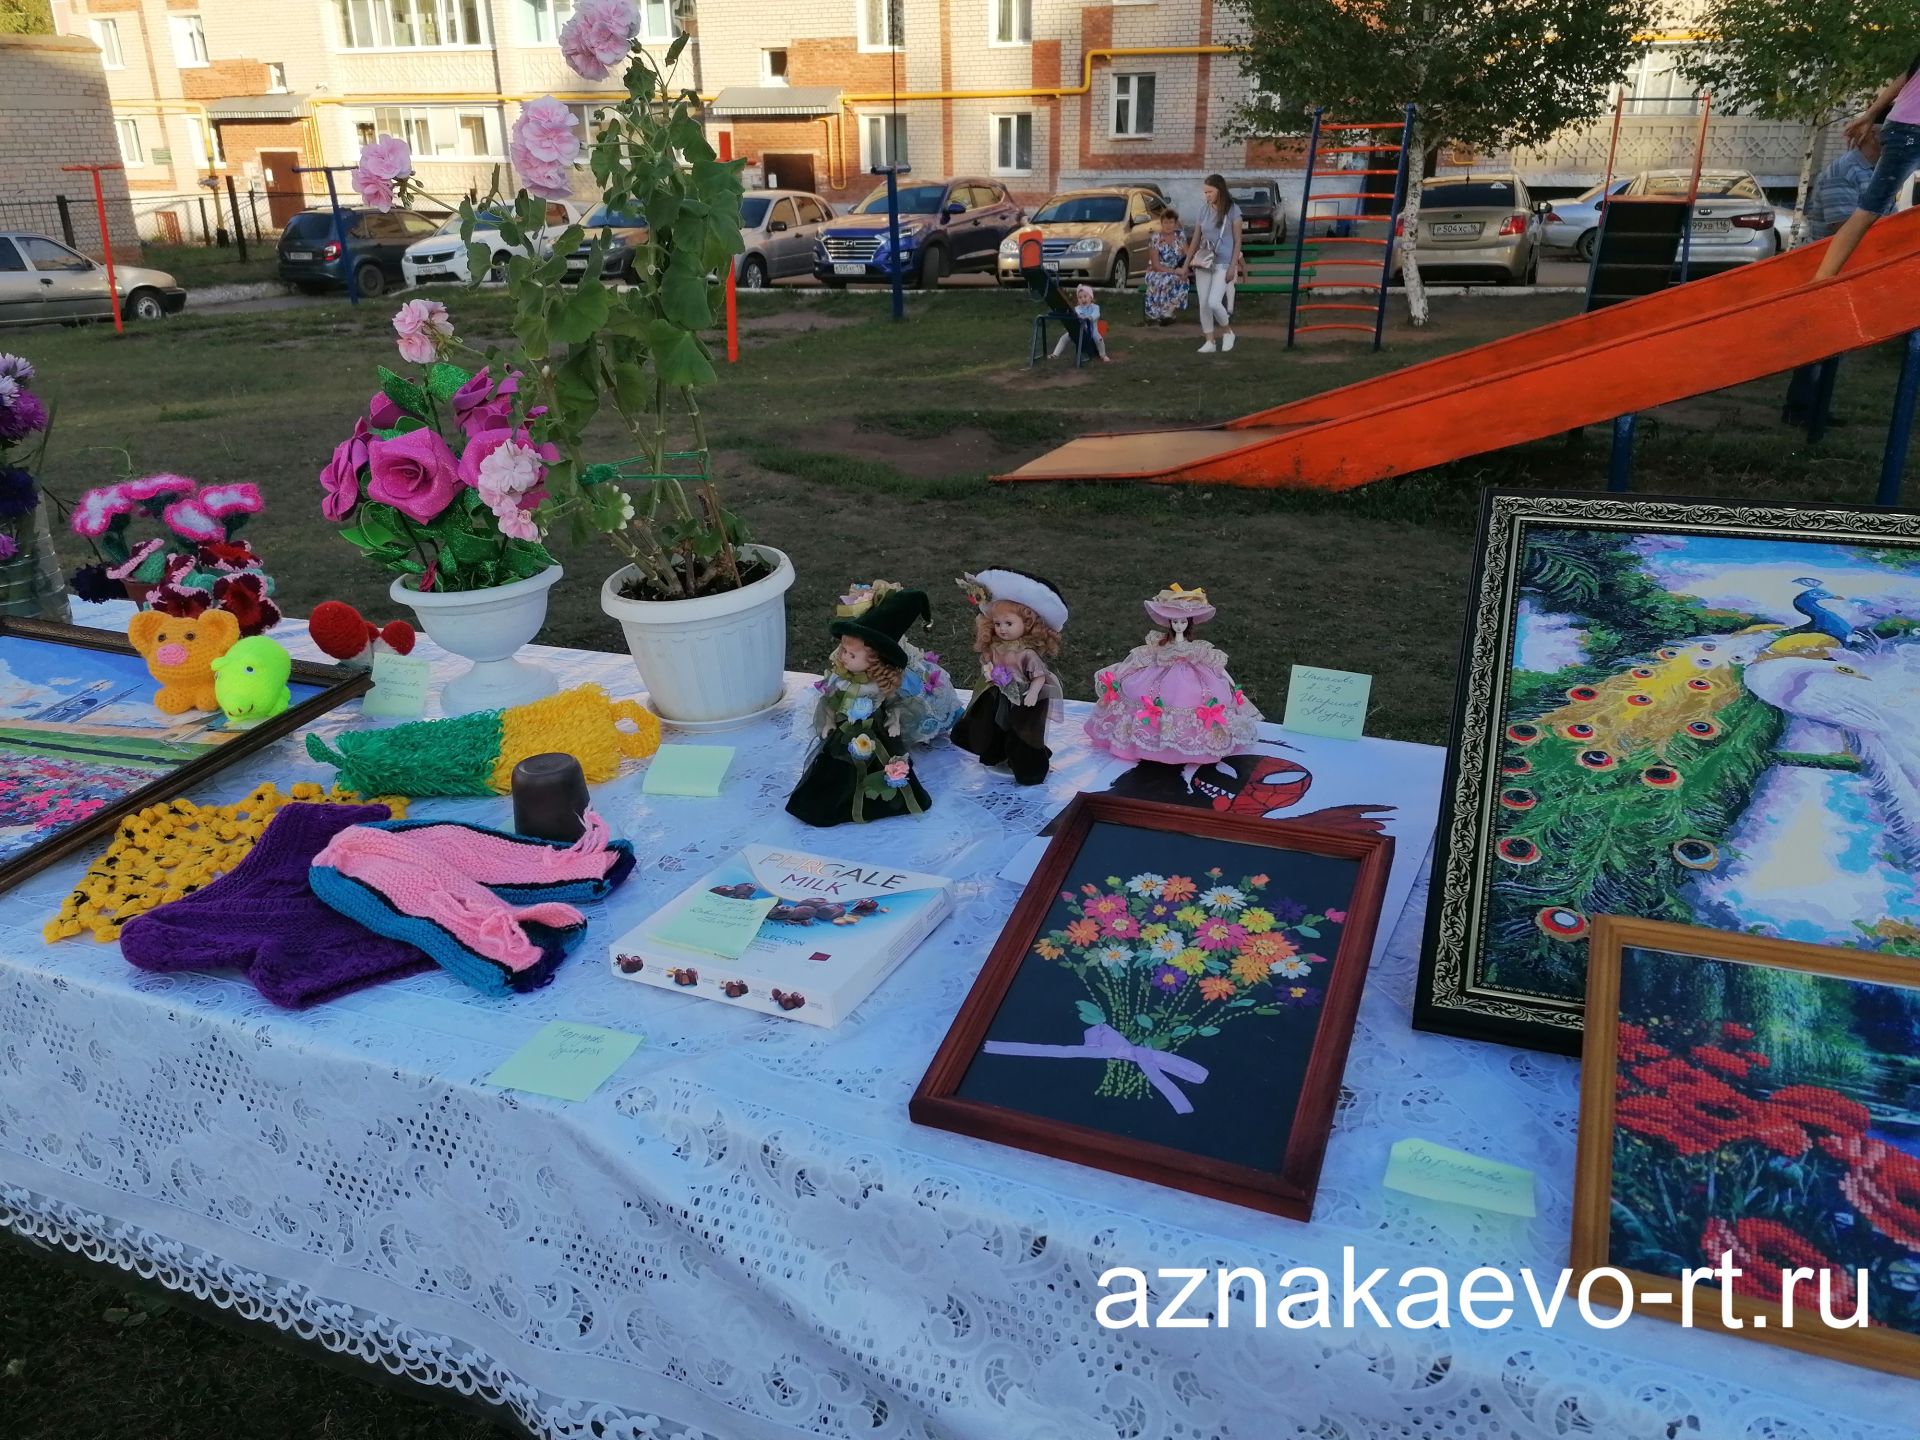 Праздник двора в микрорайоне Тукая города Азнакаево удался на славу